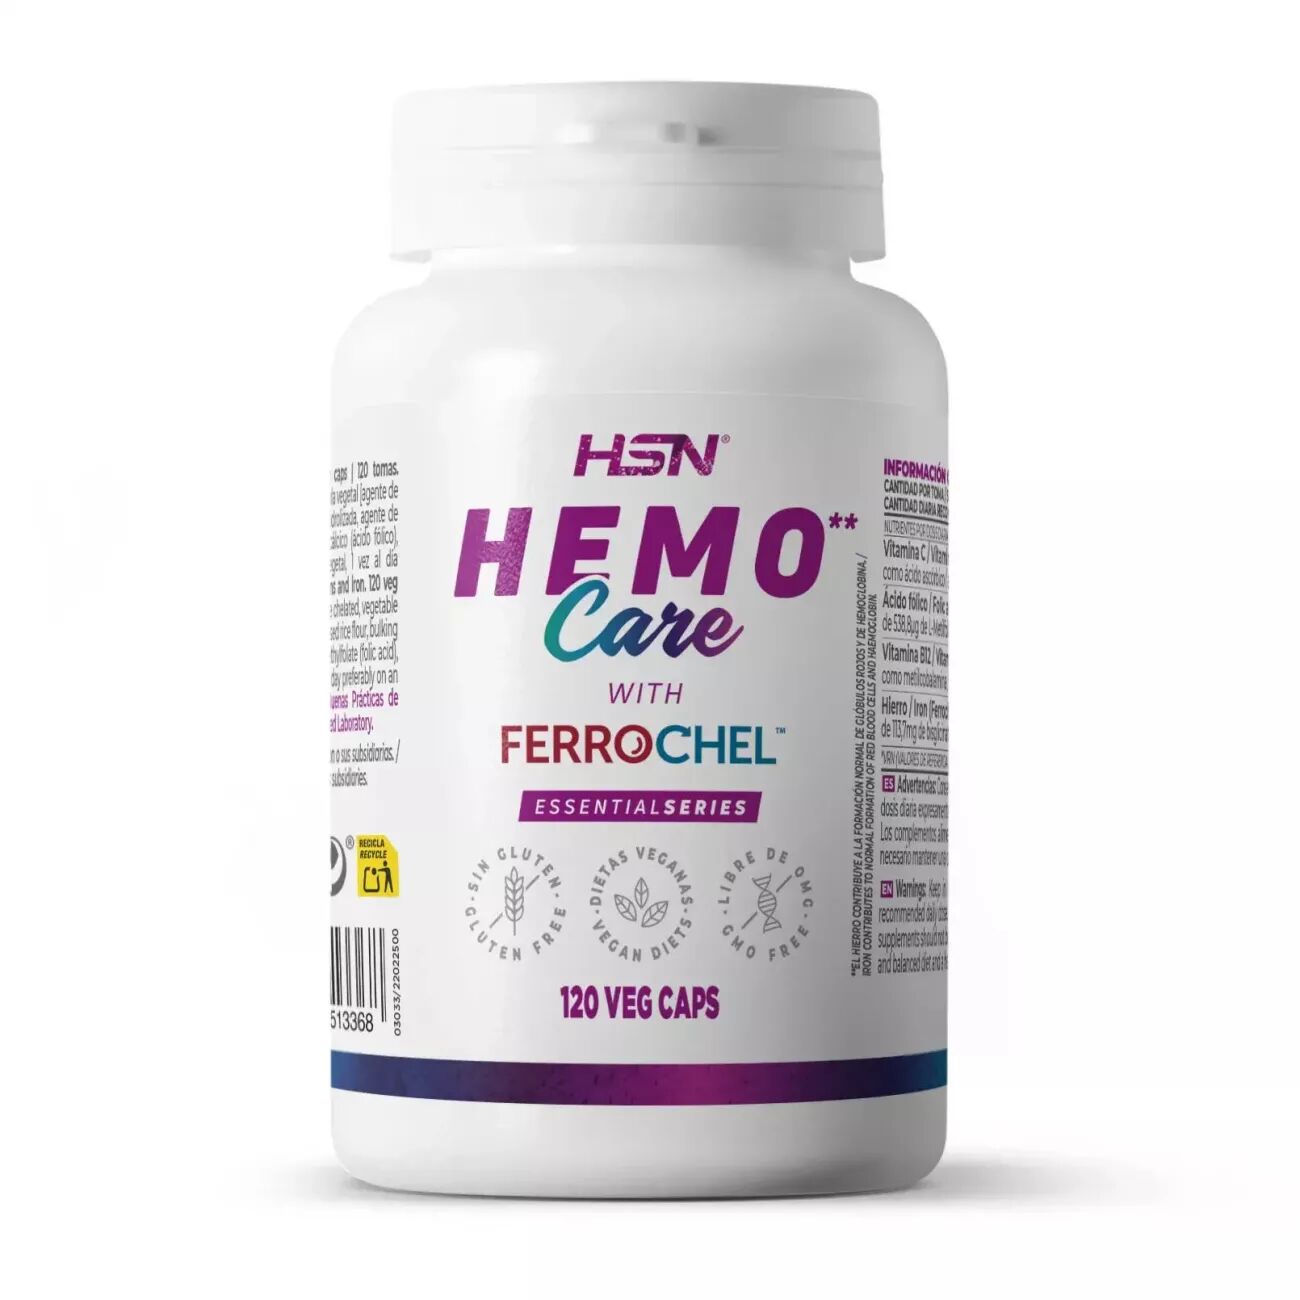 HSN Hemo care - 120 veg caps